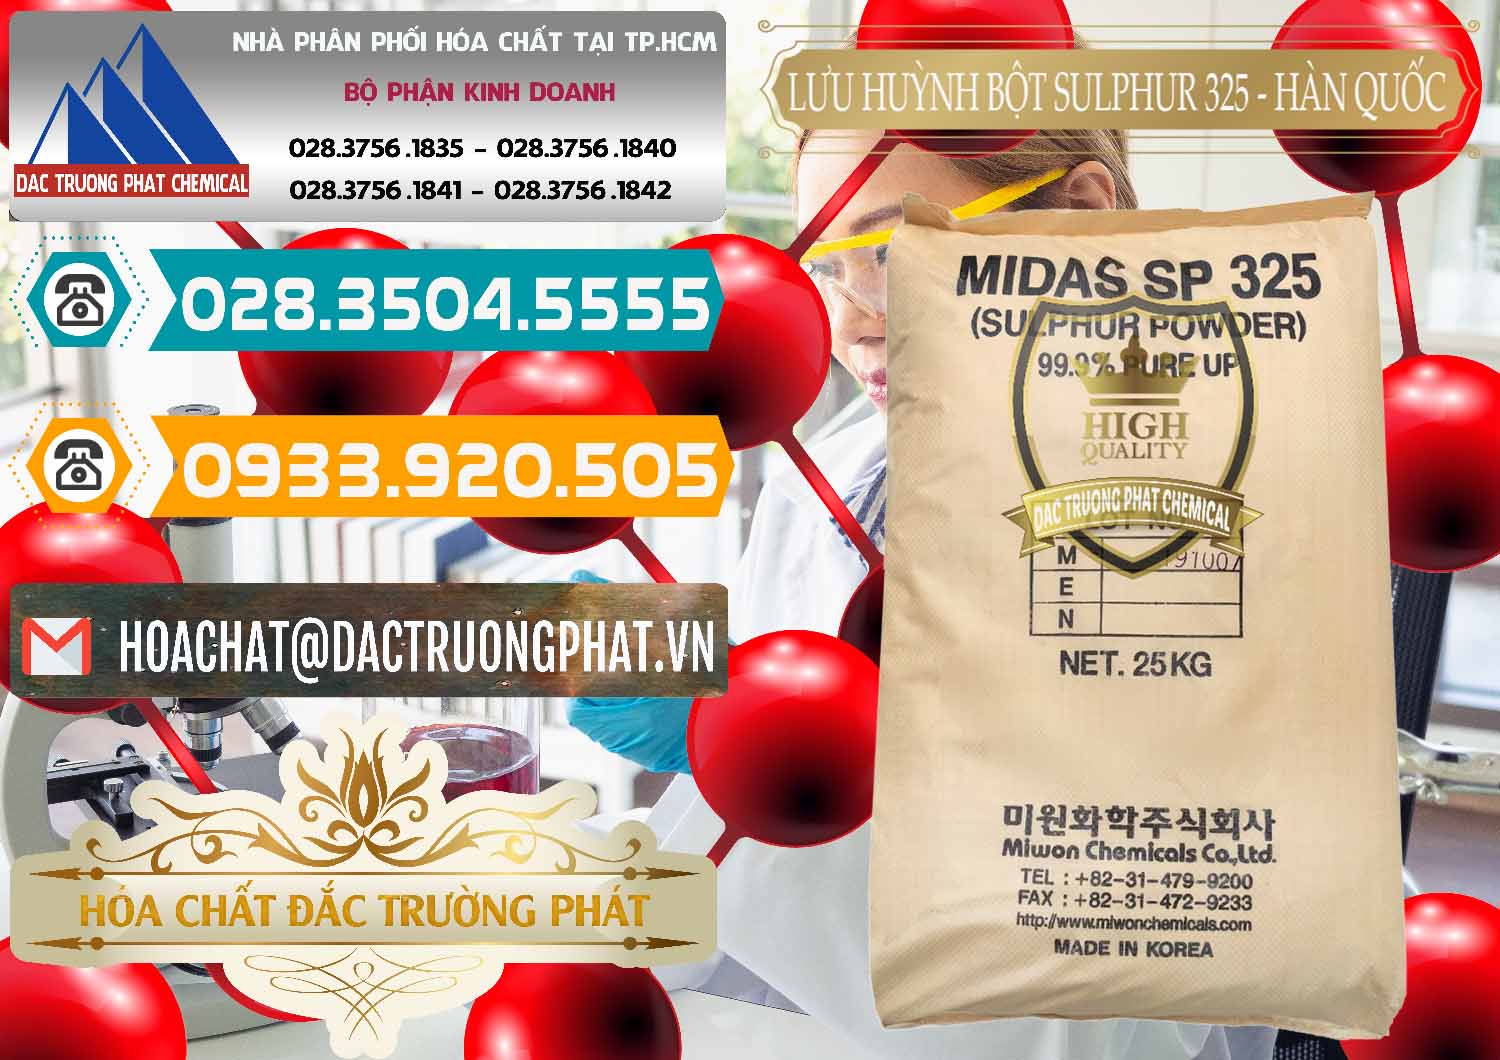 Công ty chuyên cung ứng & bán Lưu huỳnh Bột - Sulfur Powder Midas SP 325 Hàn Quốc Korea - 0198 - Cty phân phối & cung cấp hóa chất tại TP.HCM - congtyhoachat.vn